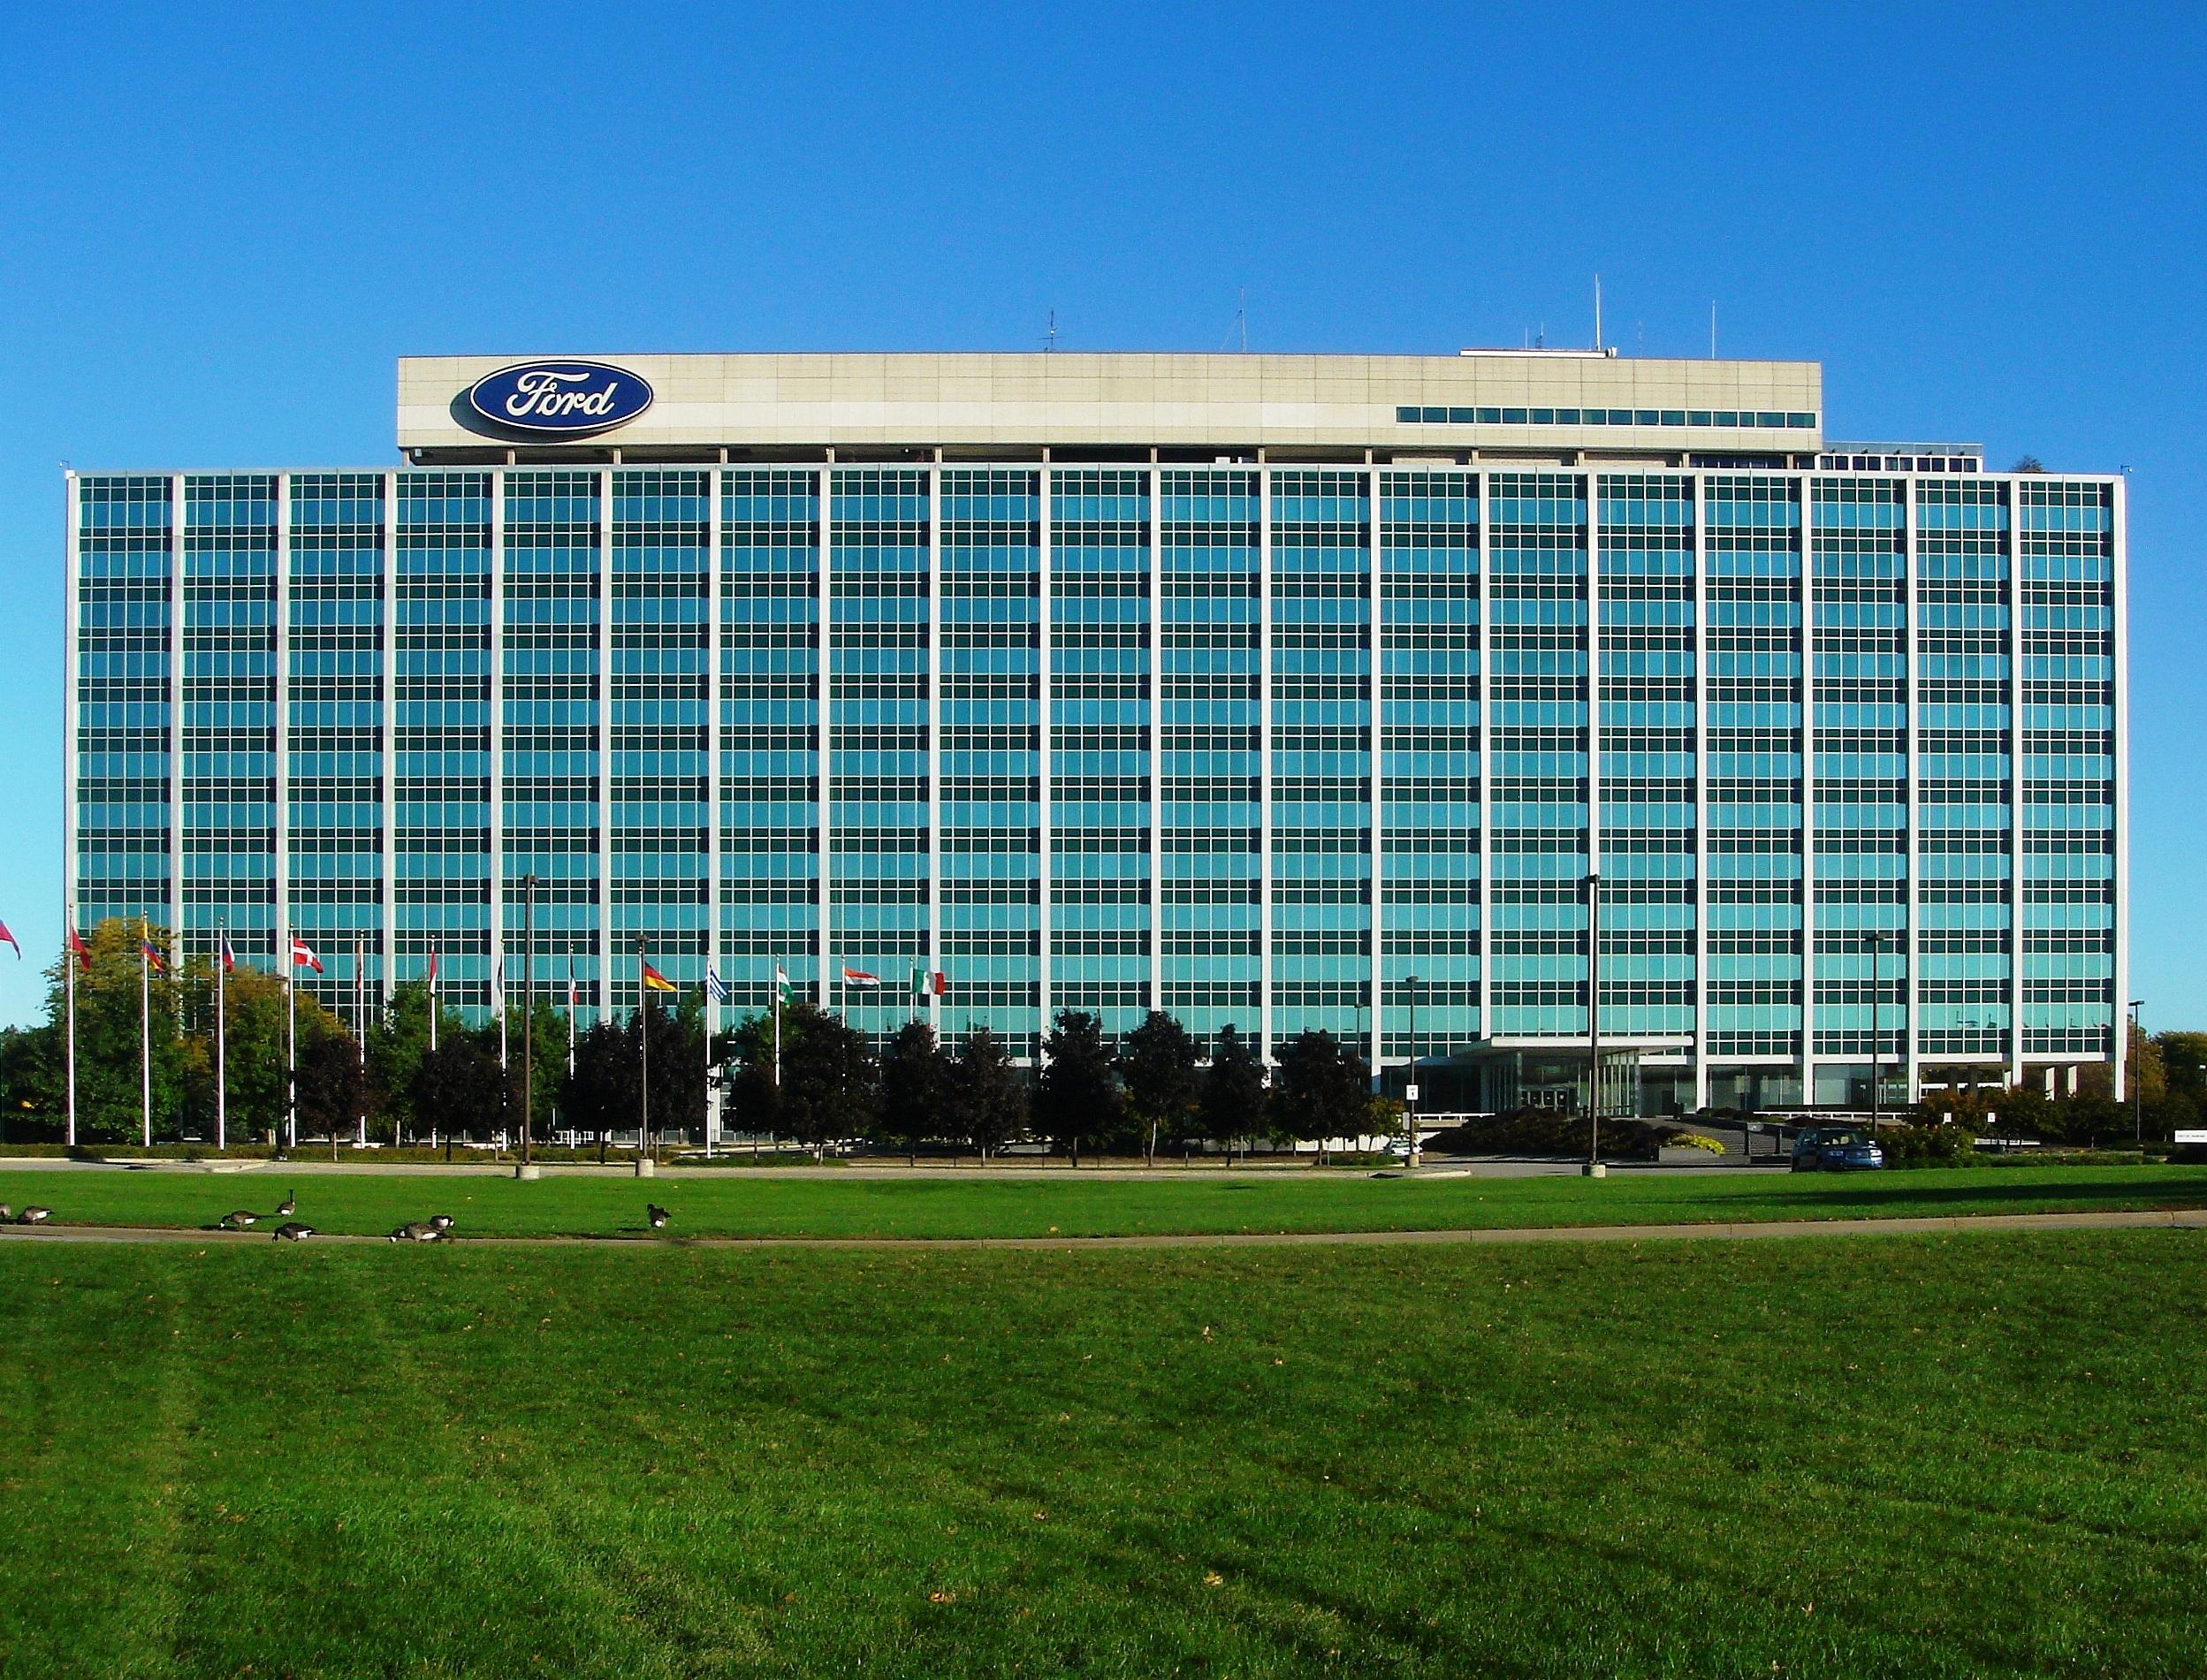 Ford Motor Company igualará con hasta 500,000 S en donaciones a organizaciones comunitarias seleccionadas en la lucha contra el COVID-19